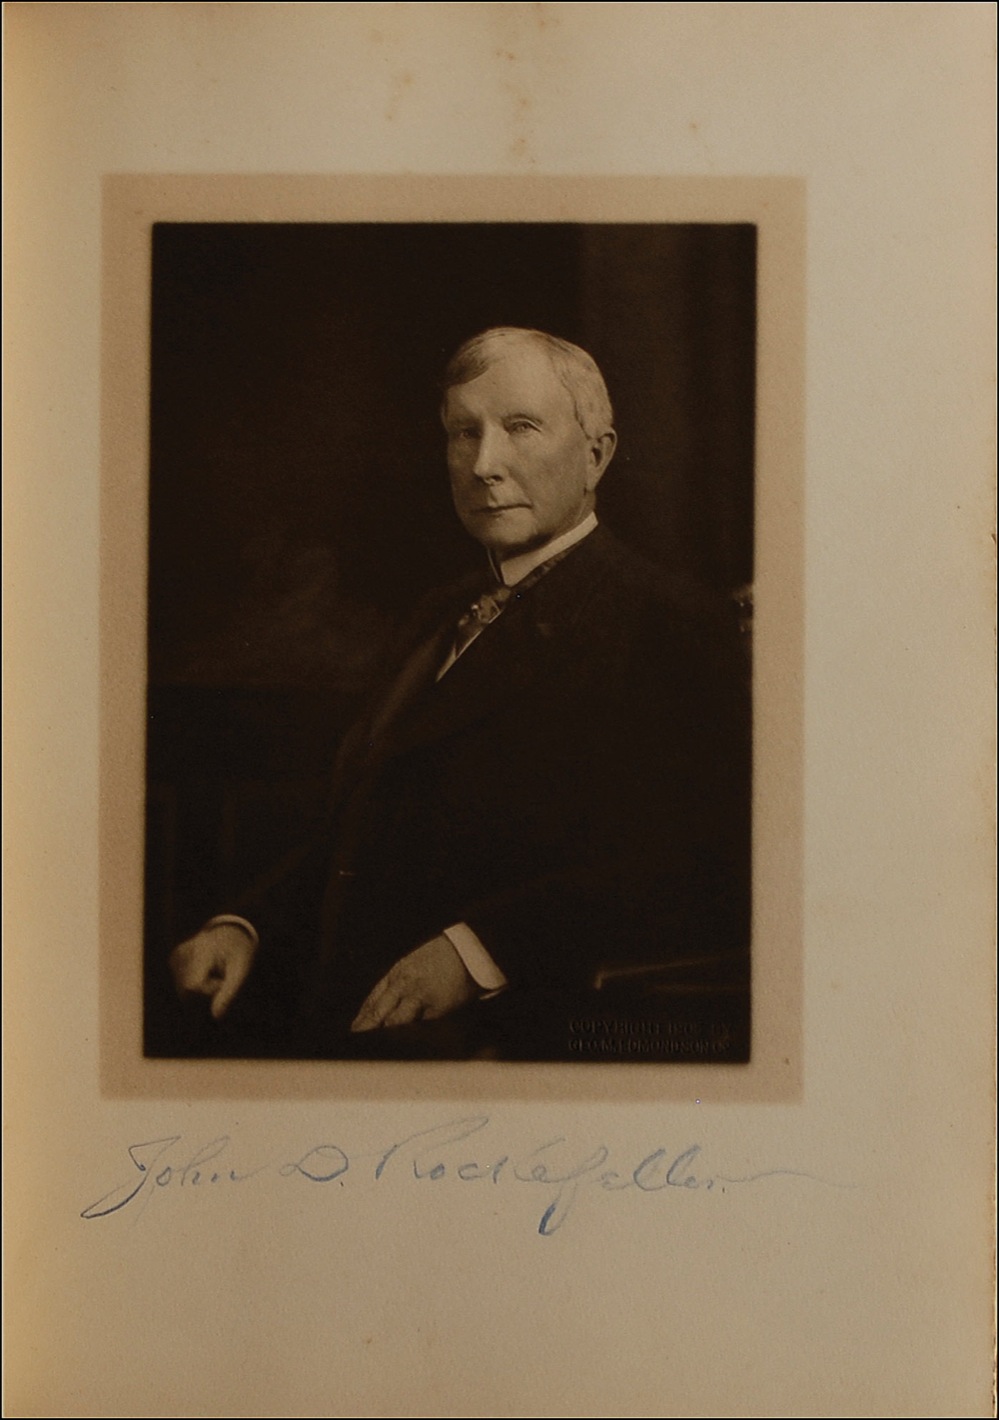 Lot #296 John D. Rockefeller